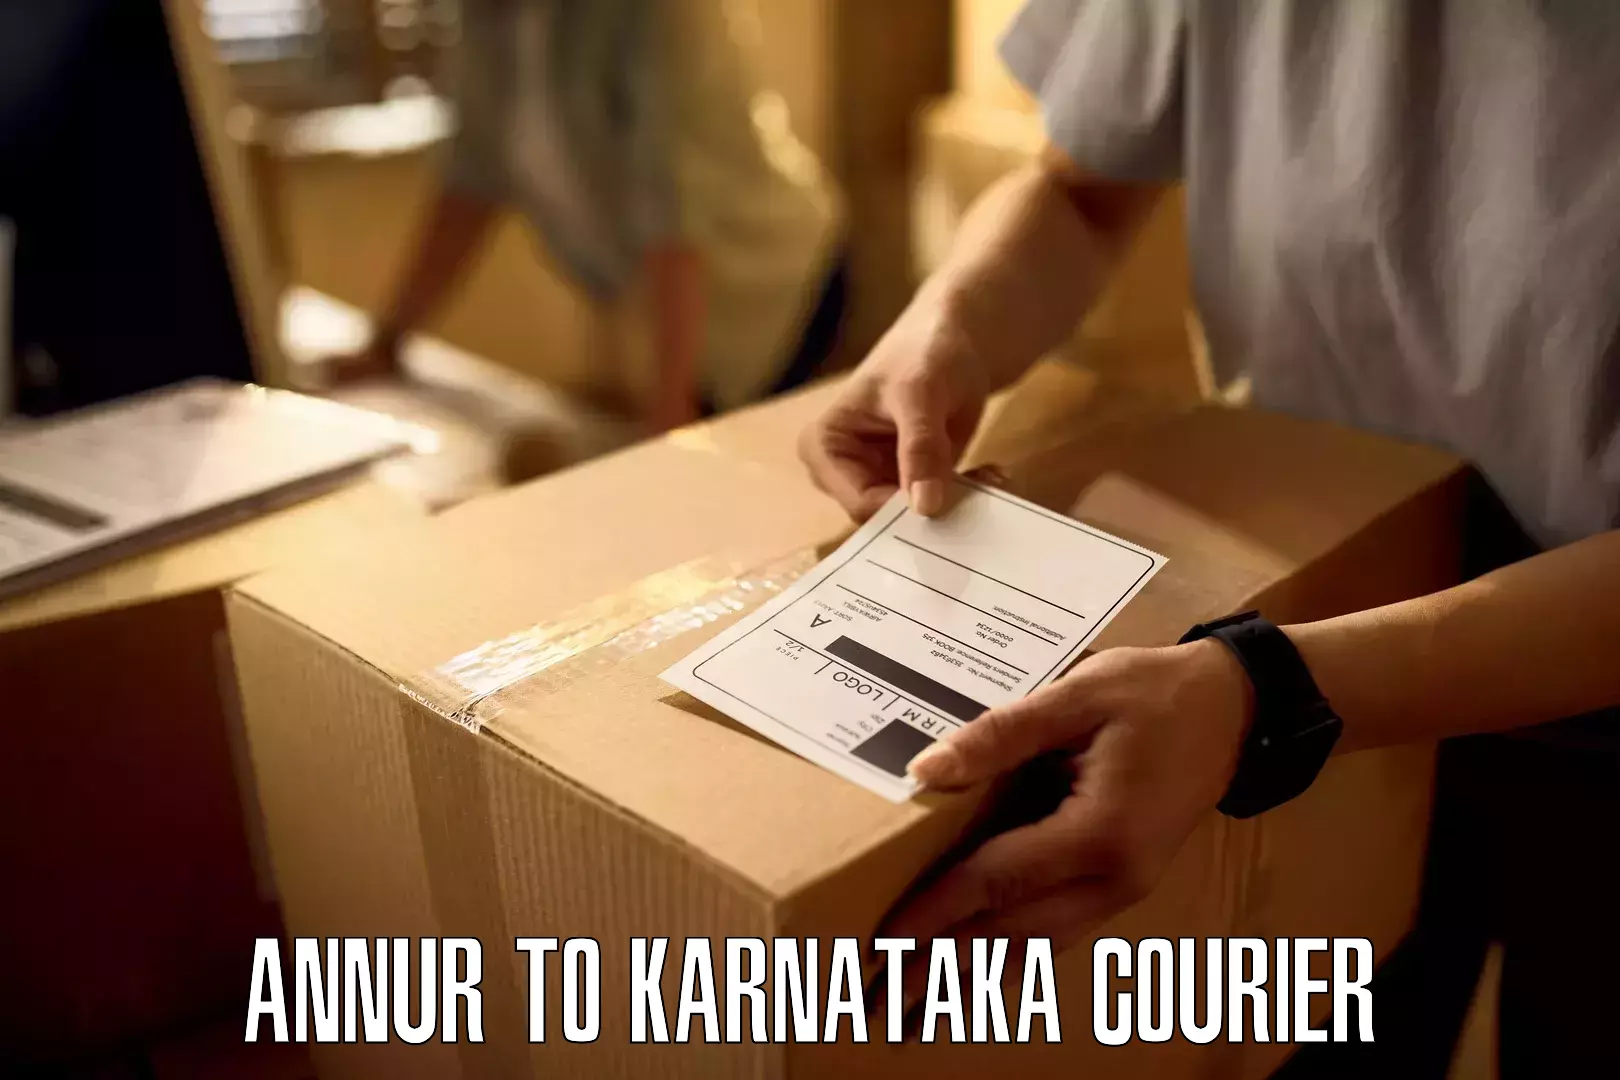 Nationwide courier service Annur to Karnataka